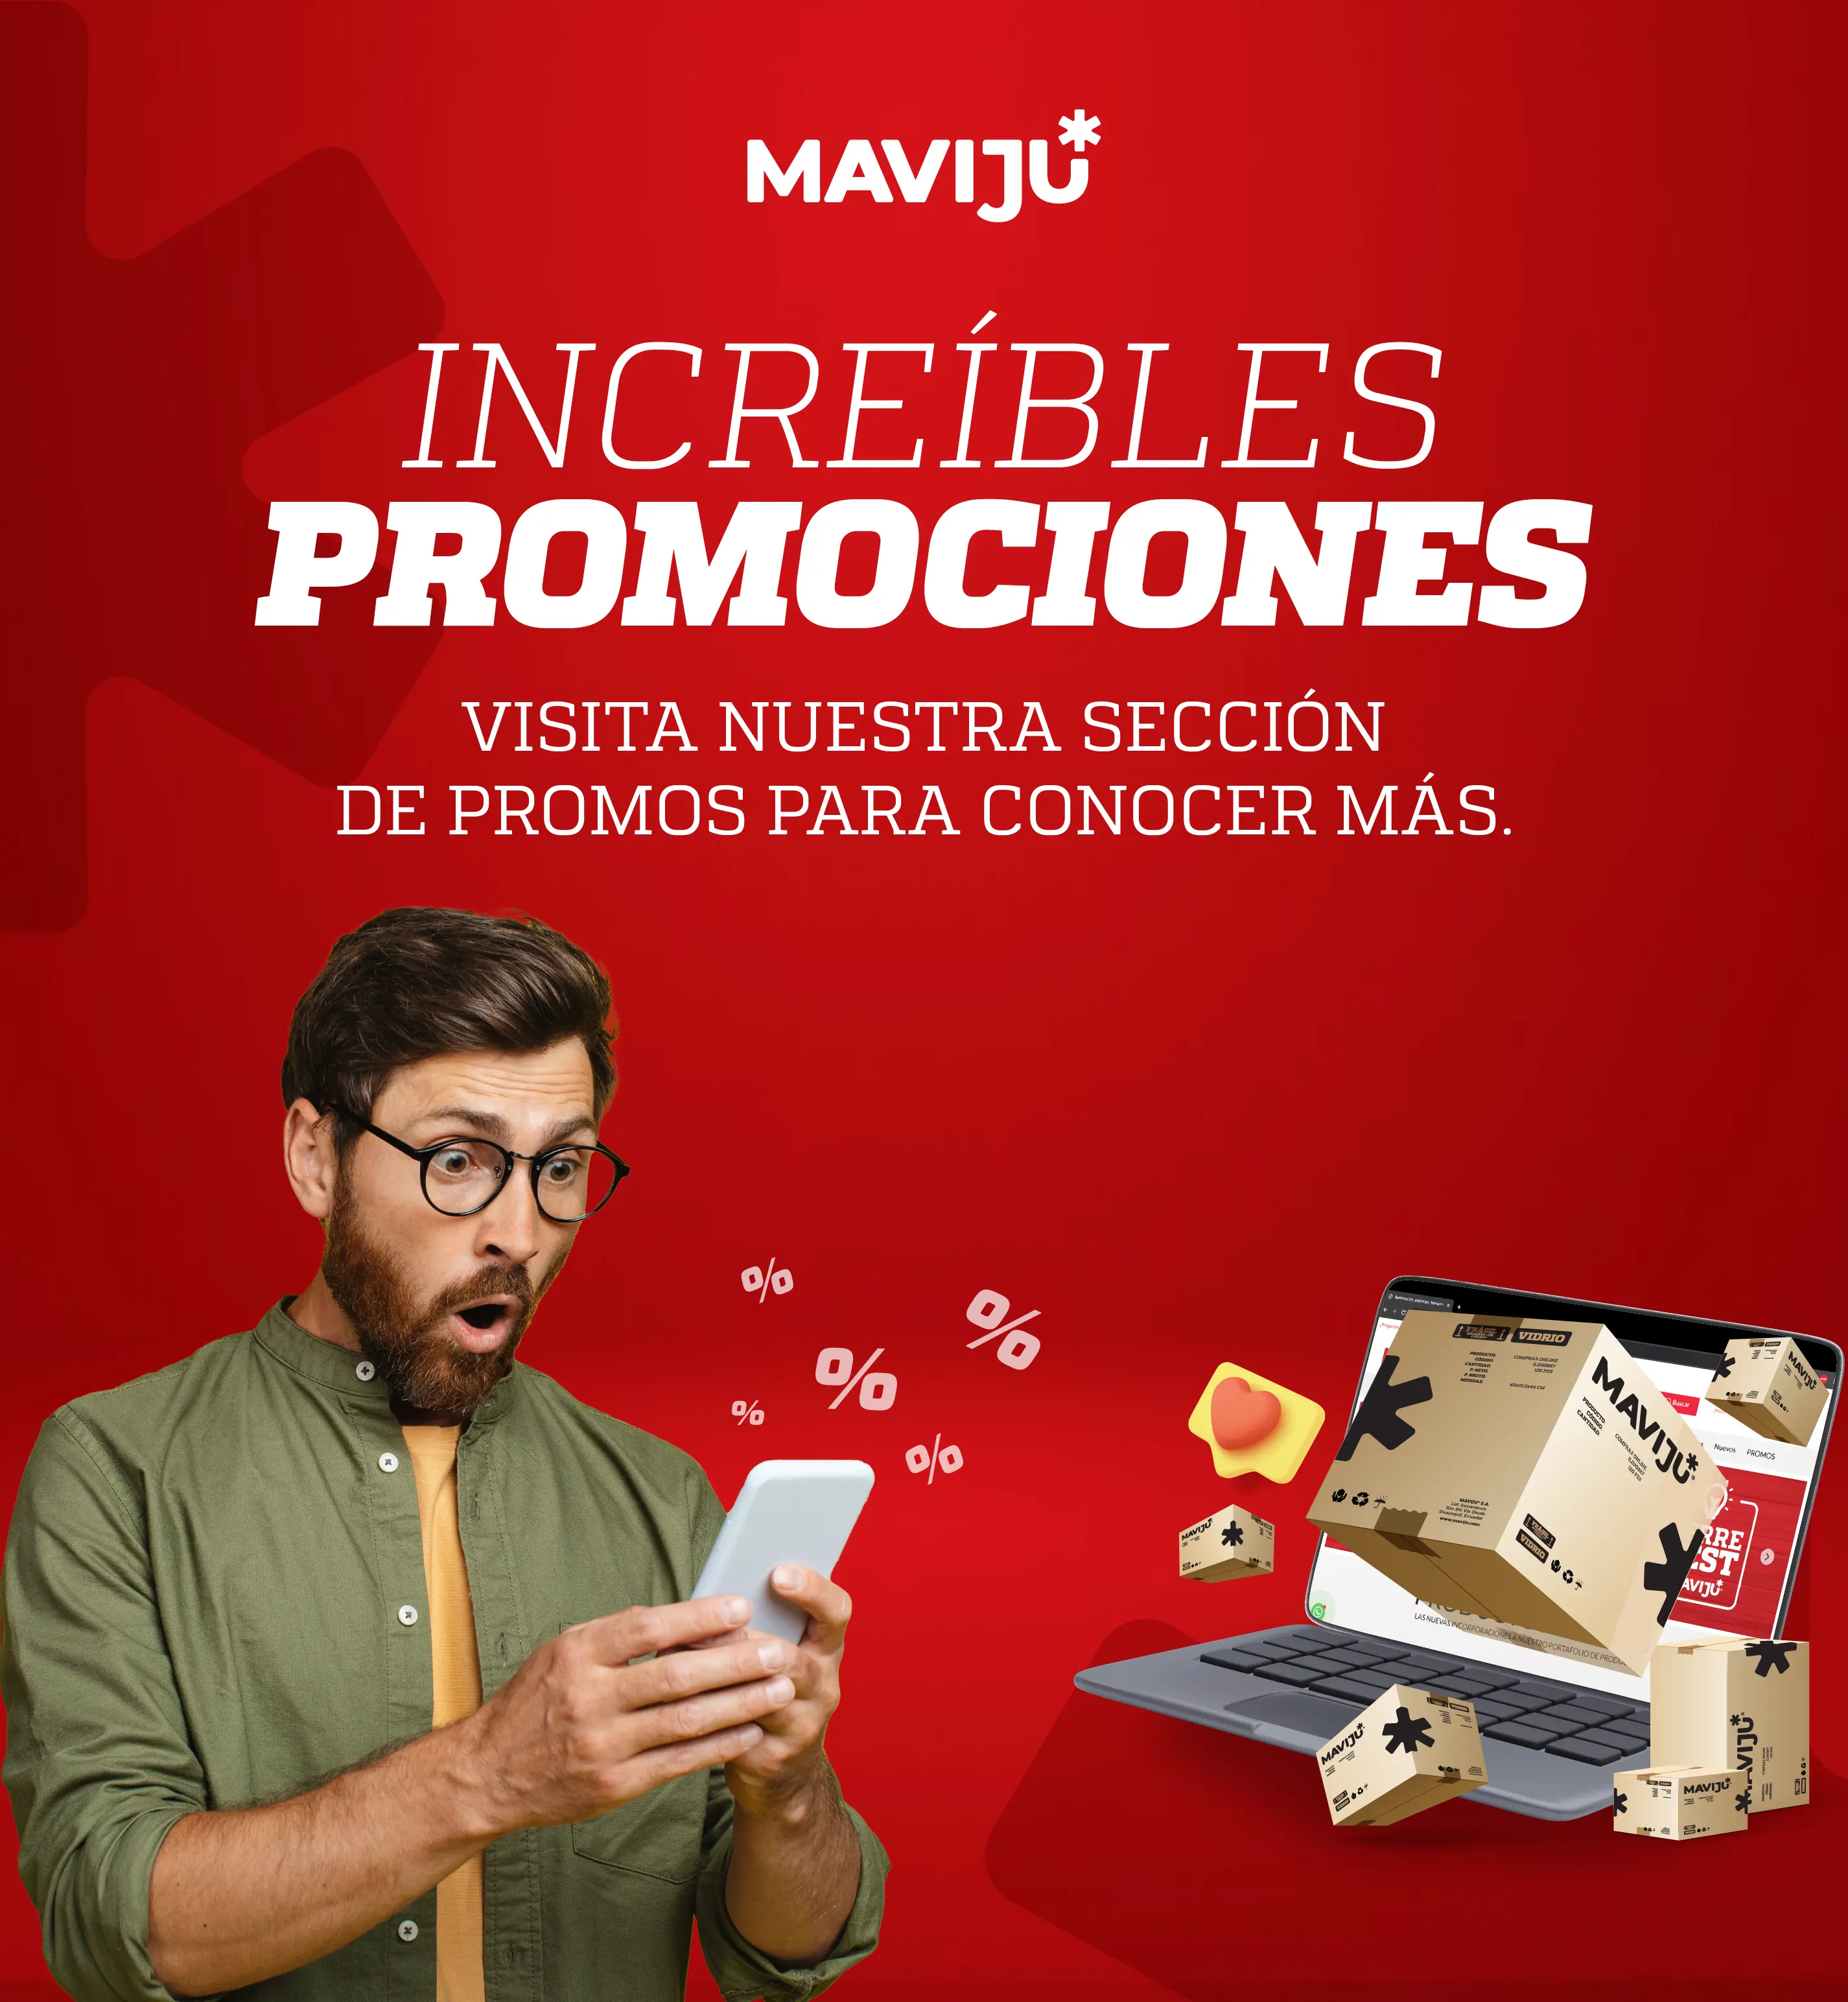 Promociones y descuentos en productos Maviju